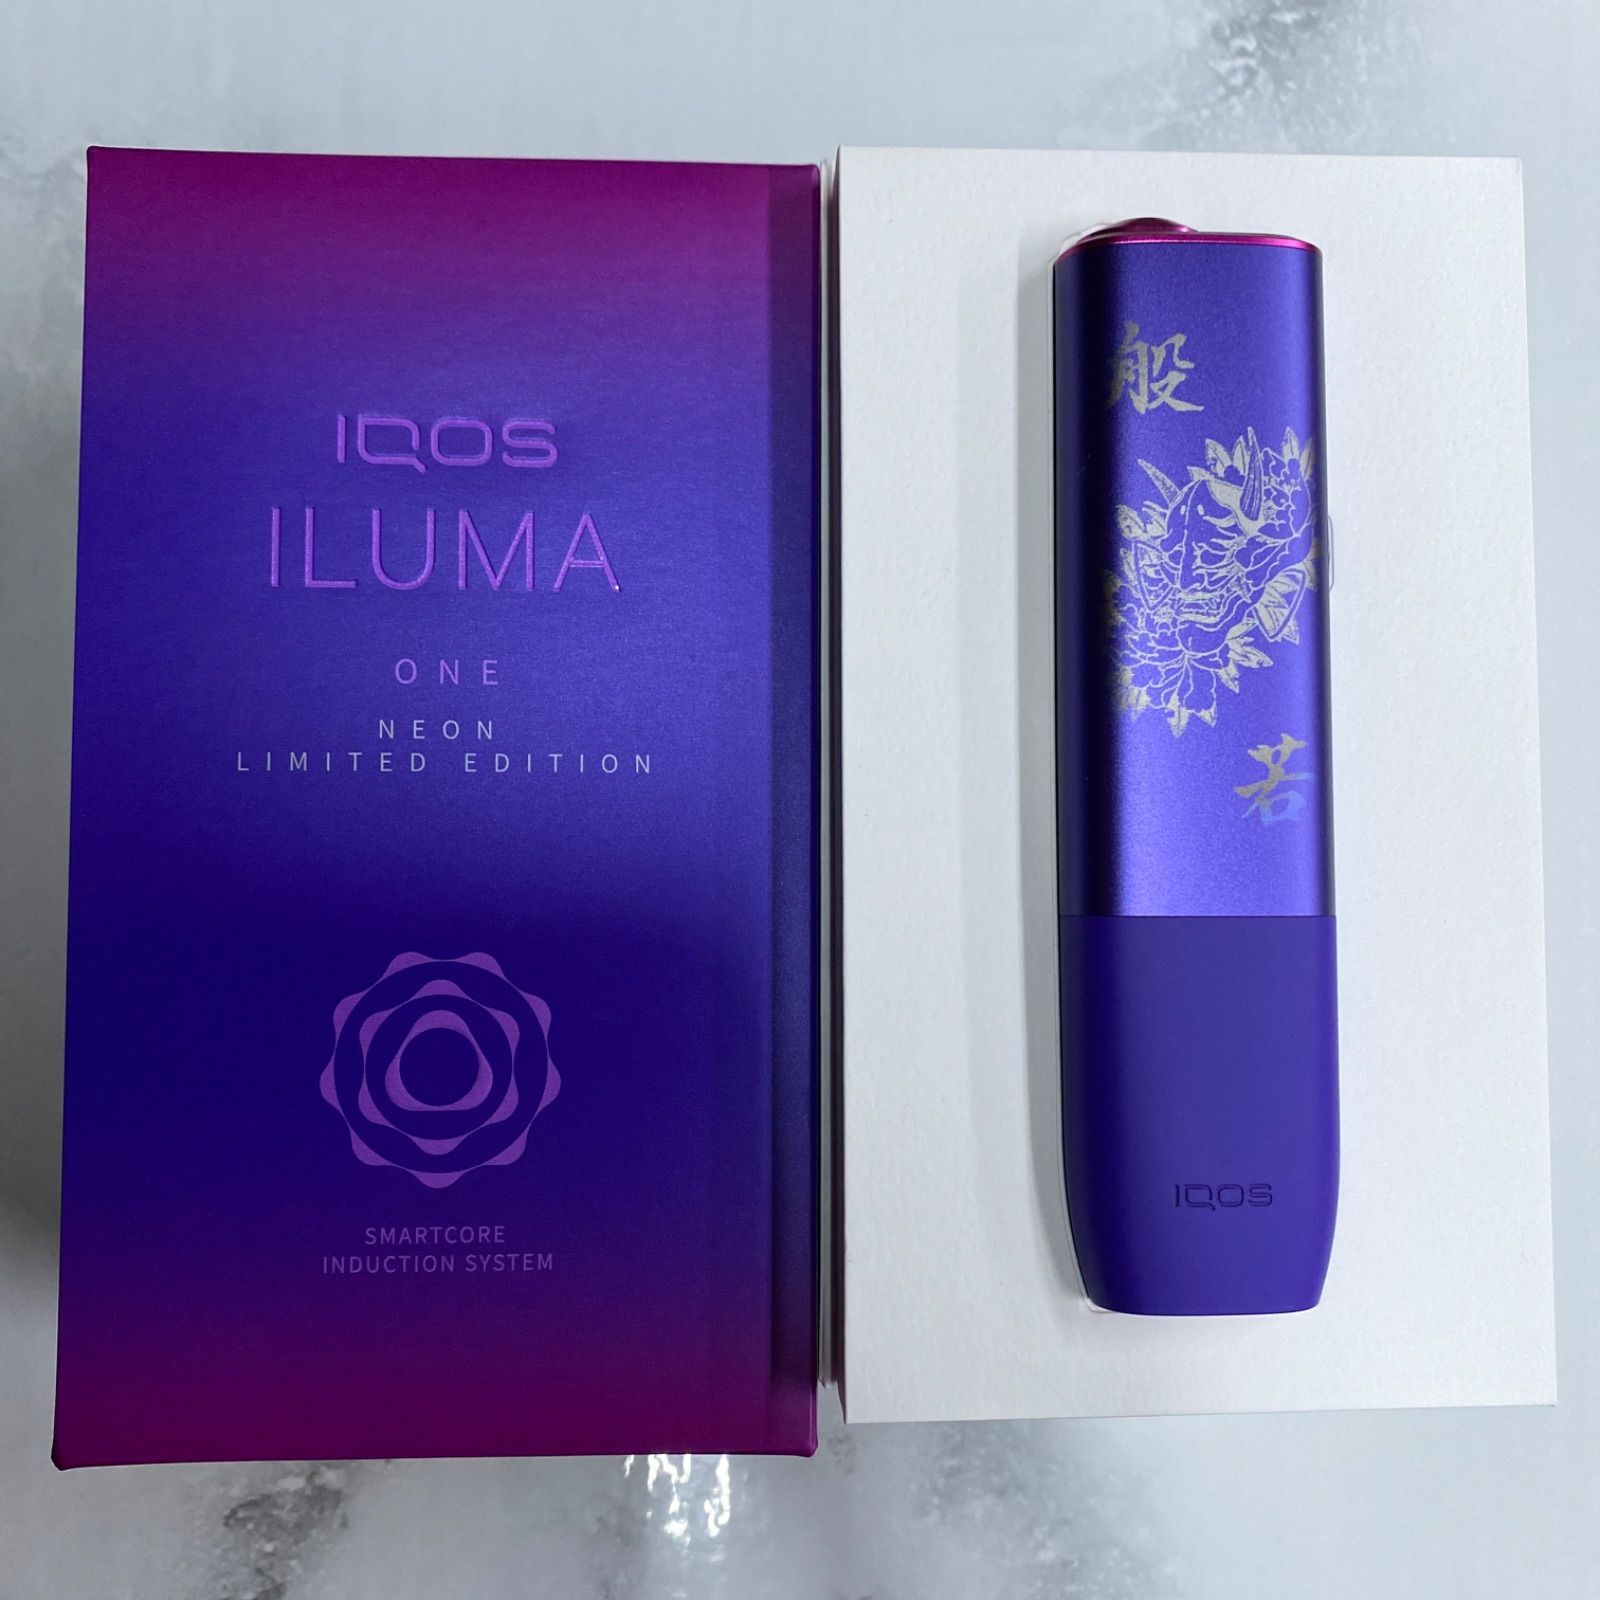 IQOS ILUMA ONE アイコスイルマワン 本体レーザー加工ブライドモデル